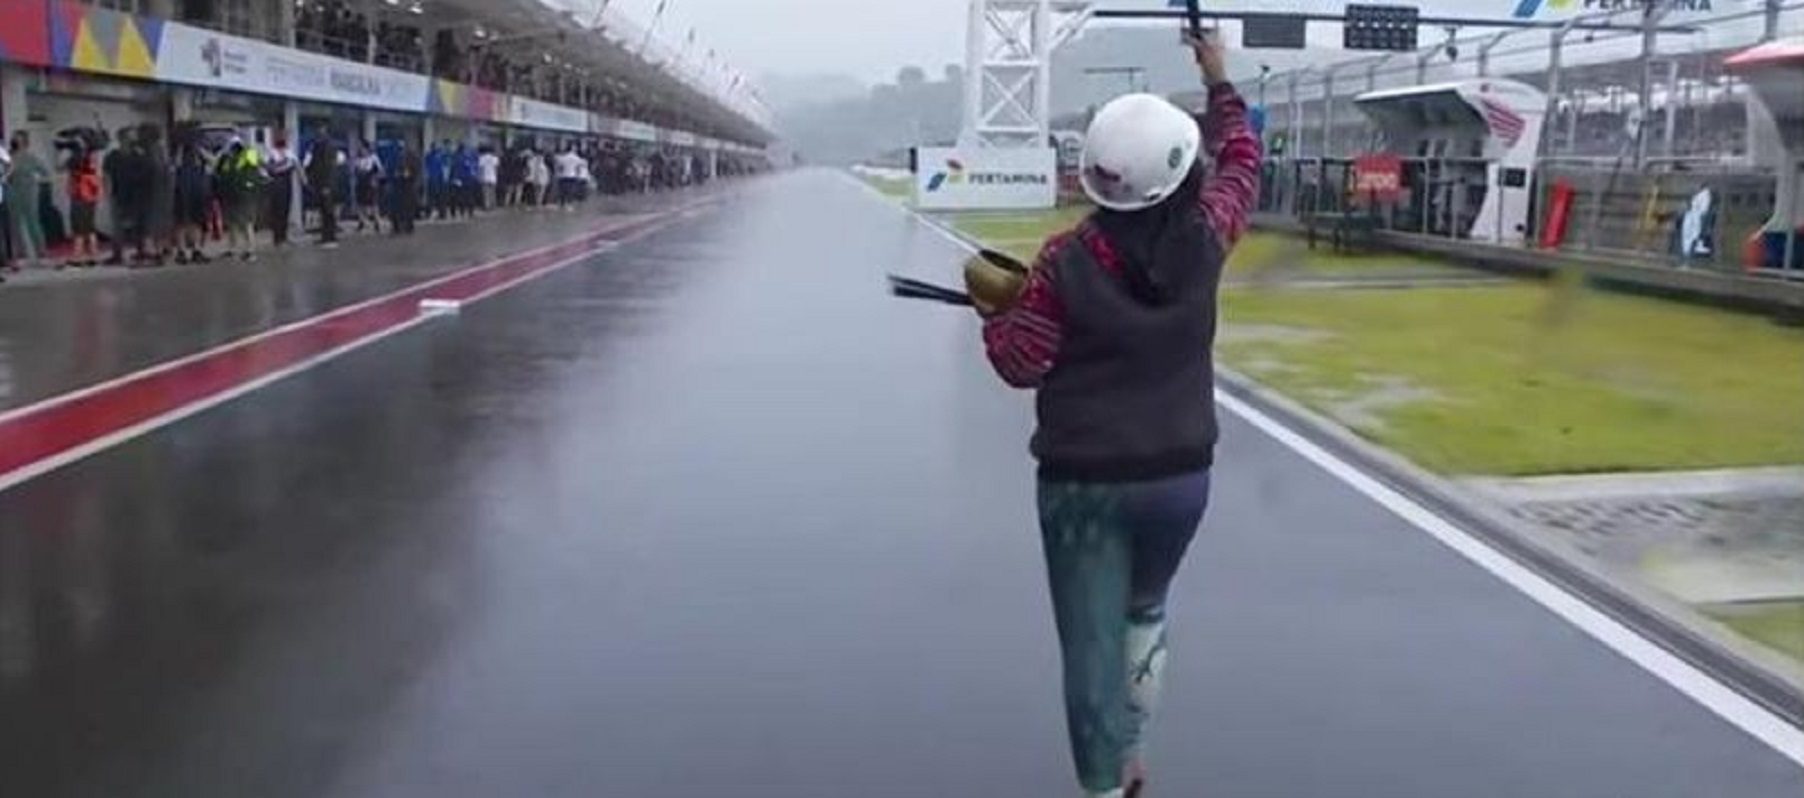 Mundial de MotoGP - a indumentária dos pilotos quando chove - de